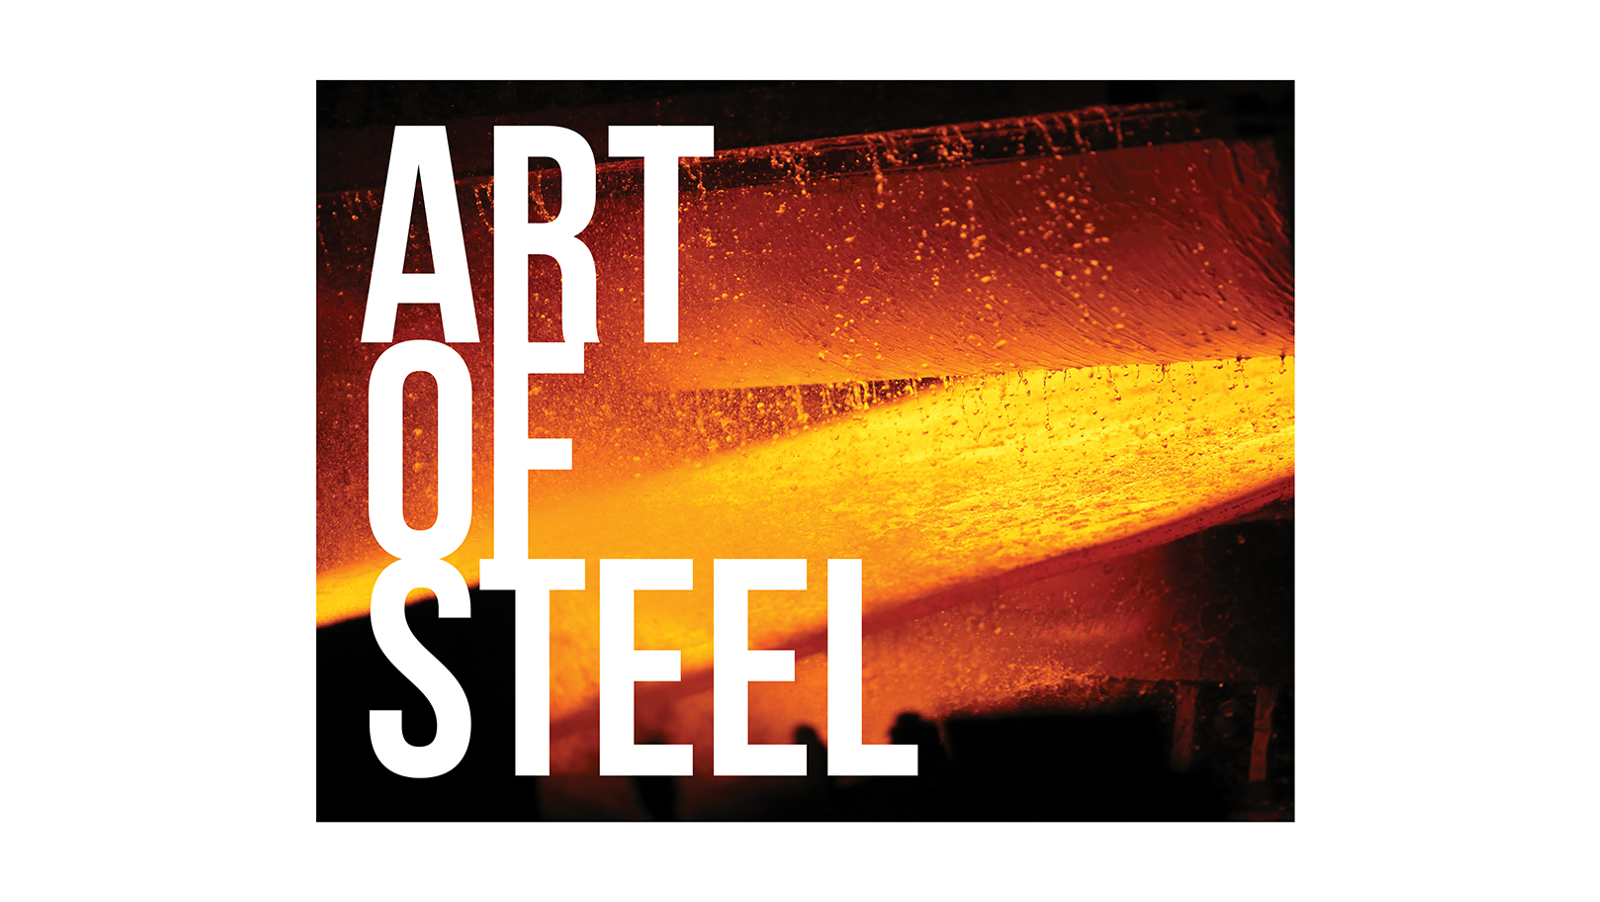 В Запорожье на «Радуге» строят грандиозный павильон для уникальной выставки «Art of steel», – ФОТО